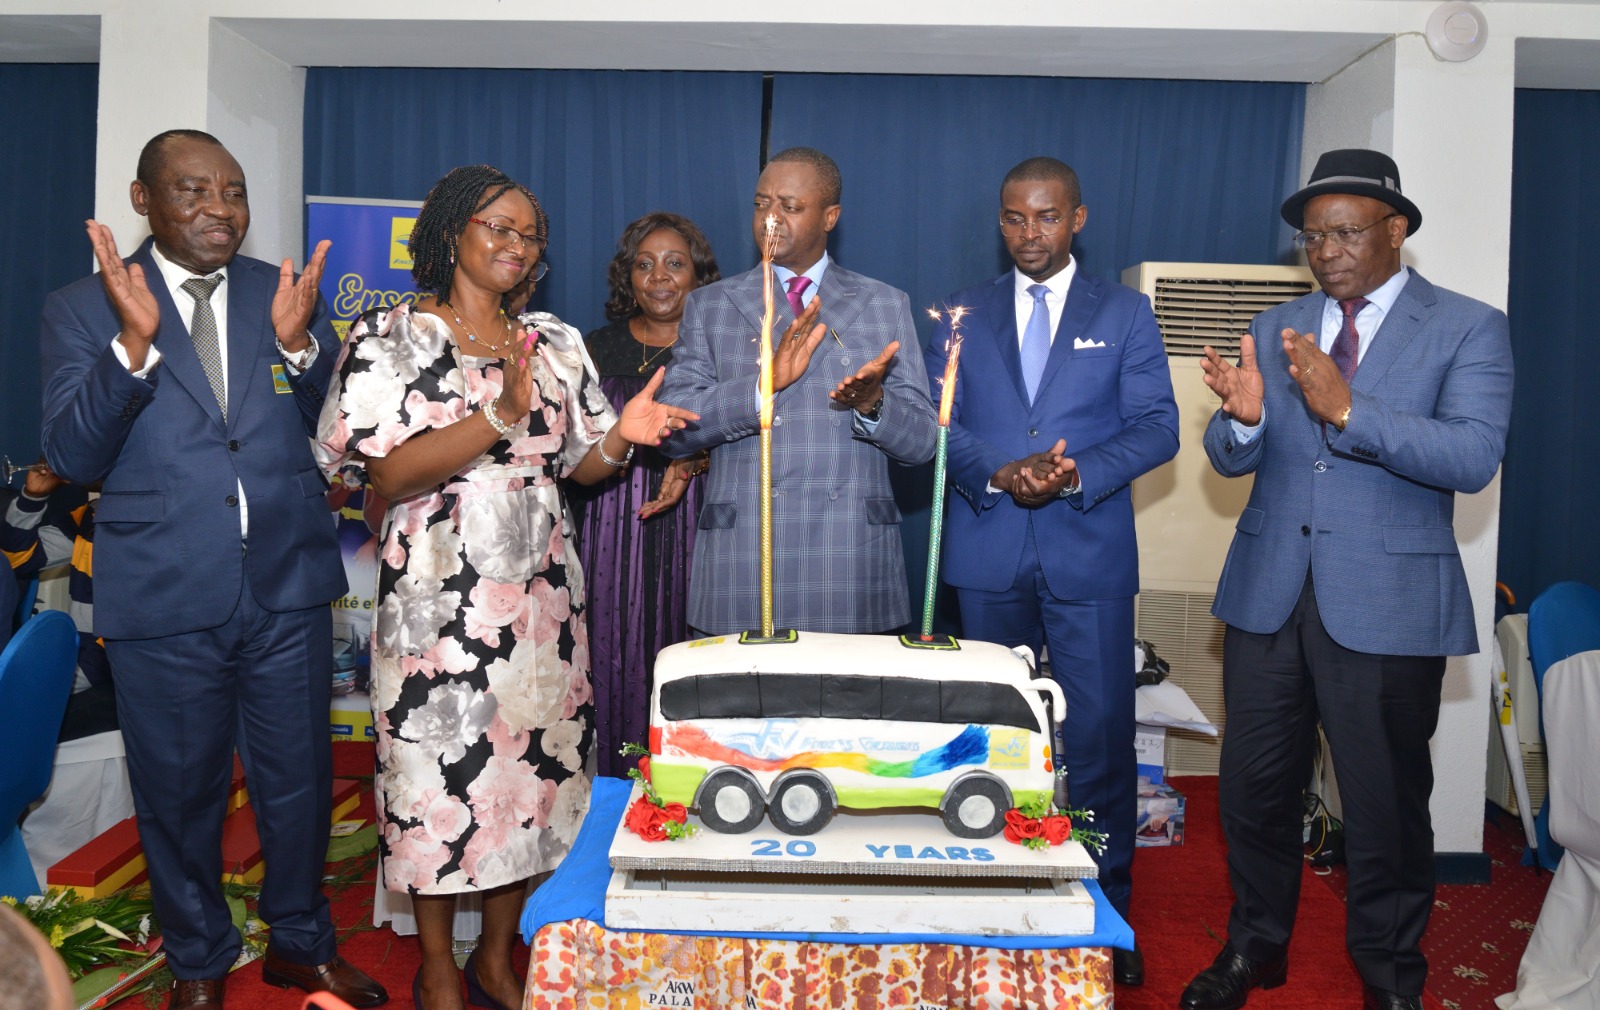 La cérémonie de clôture des festivités du 20ème anniversaire de la compagnie privée de transport interurbain camerounais a eu lieu le 12 août 2023 à l’hôtel Akwa Palace de Douala. Retour sur les temps forts de la soirée.